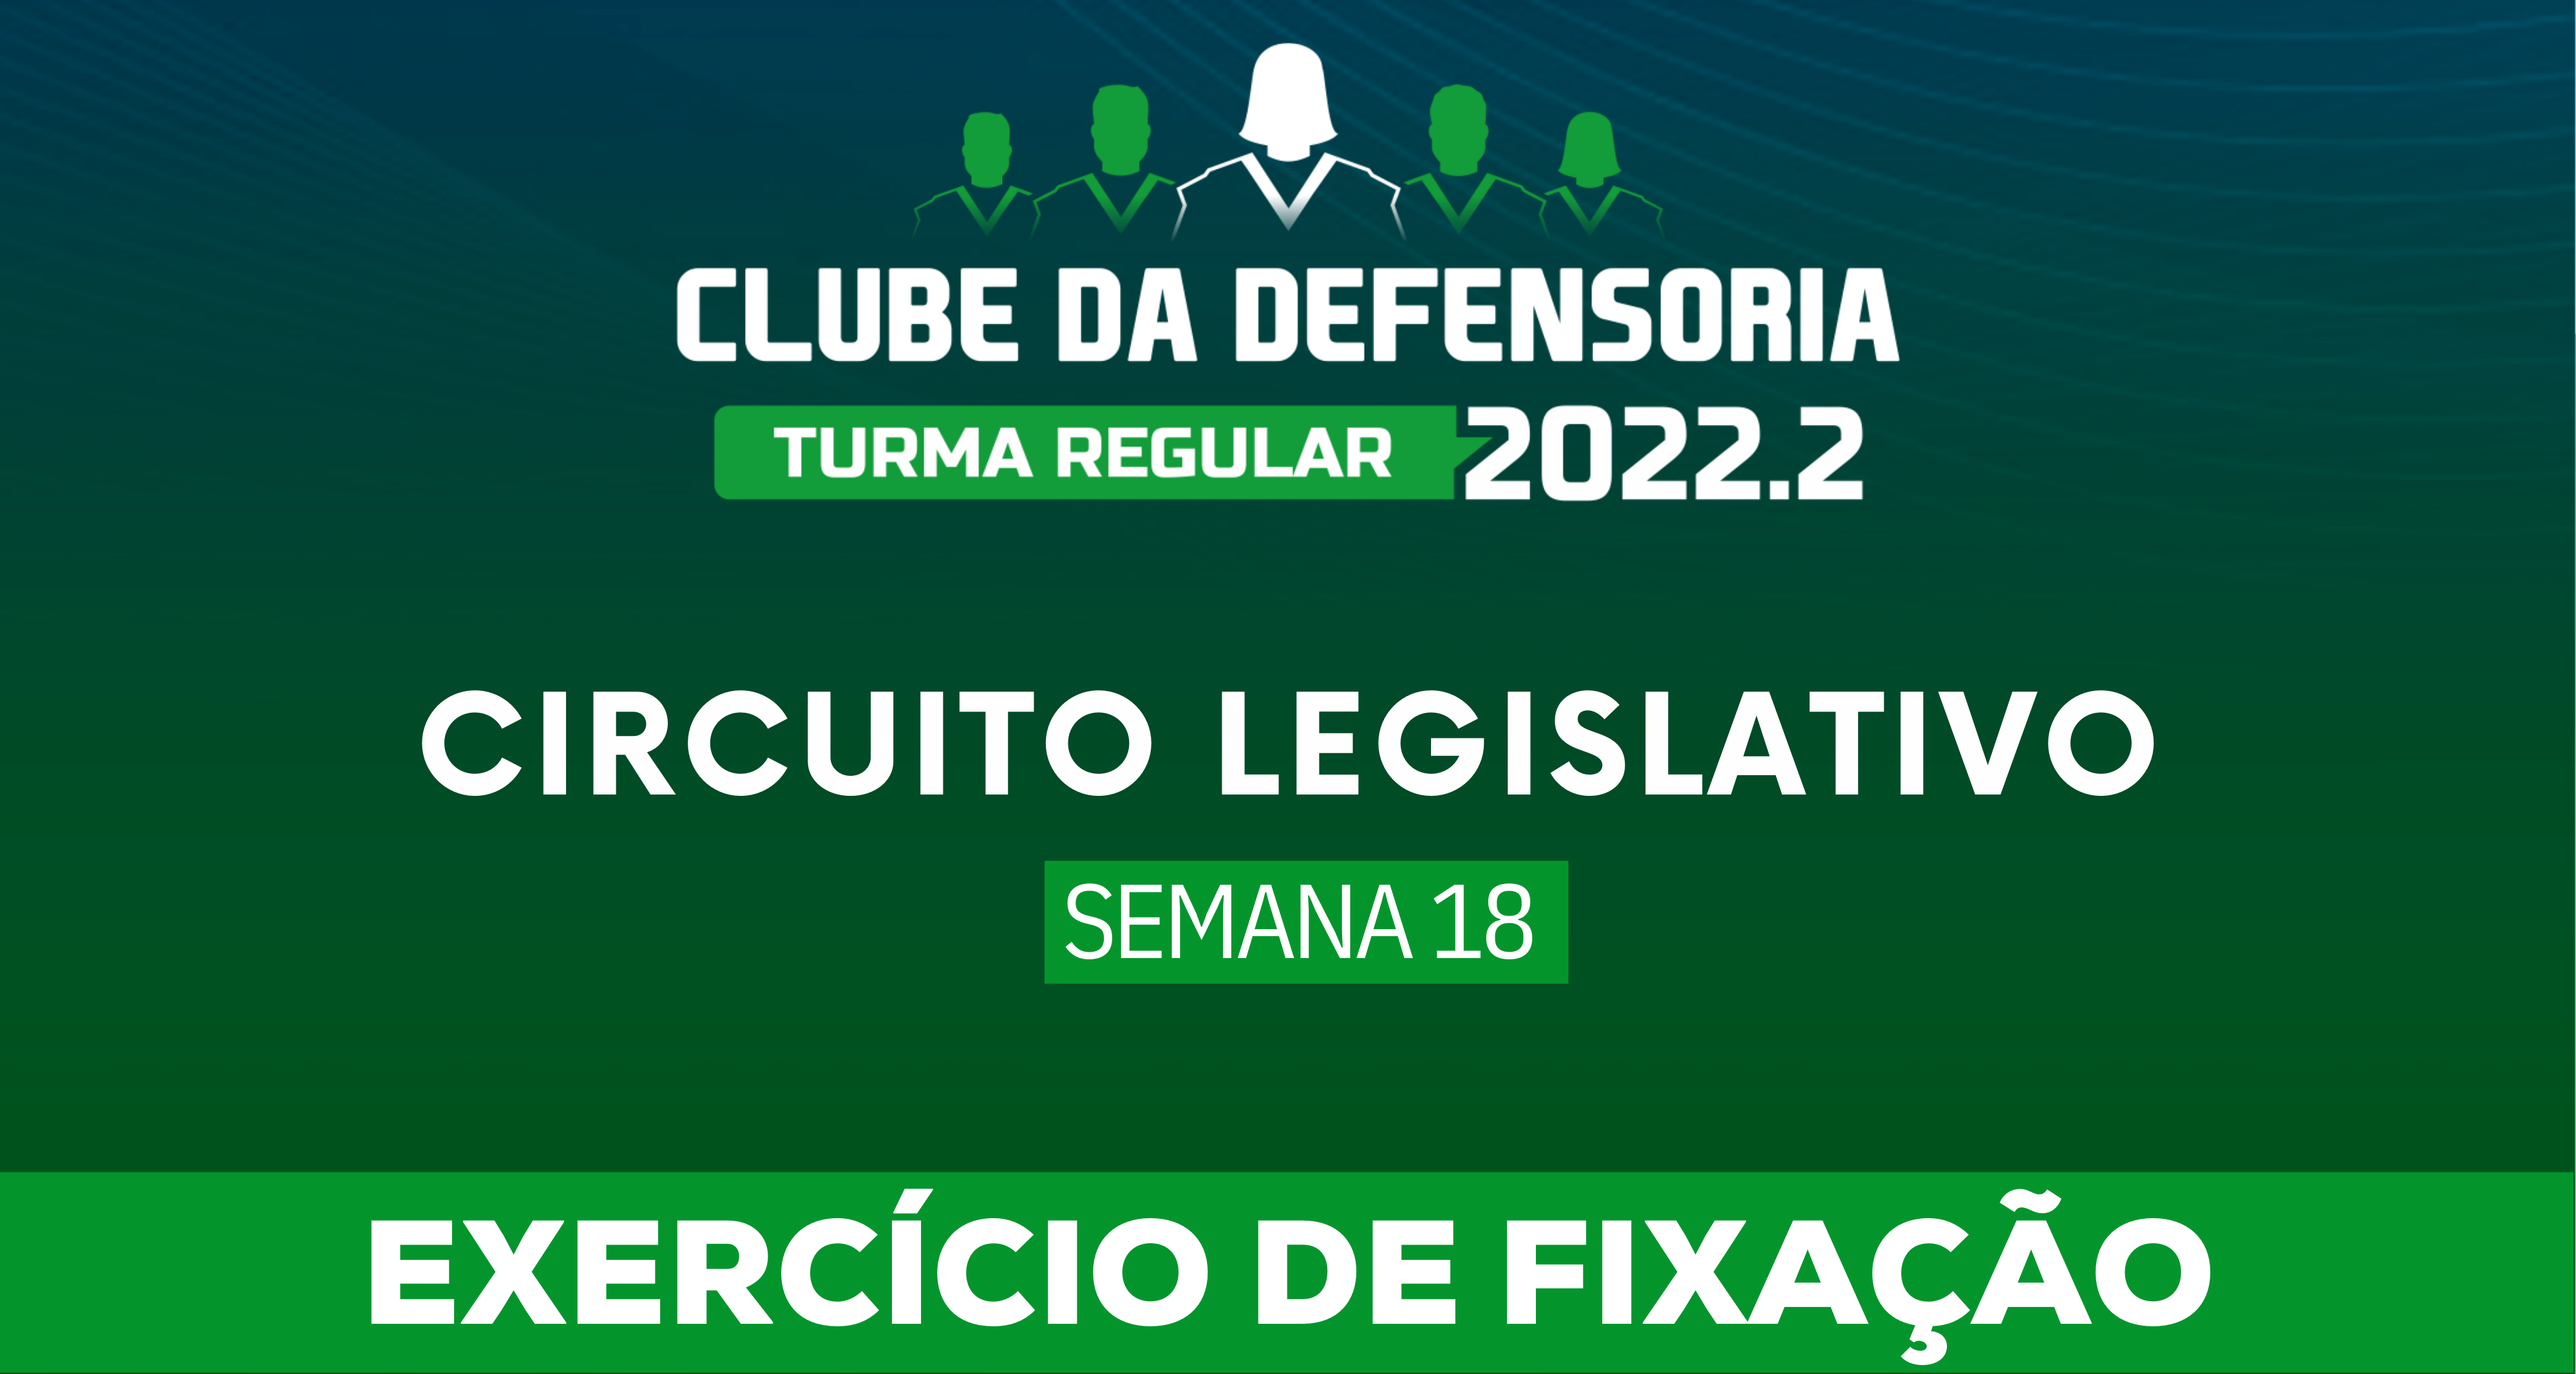 Circuito Legislativo 2022.2 (Clube da Defensoria - Semana 18)